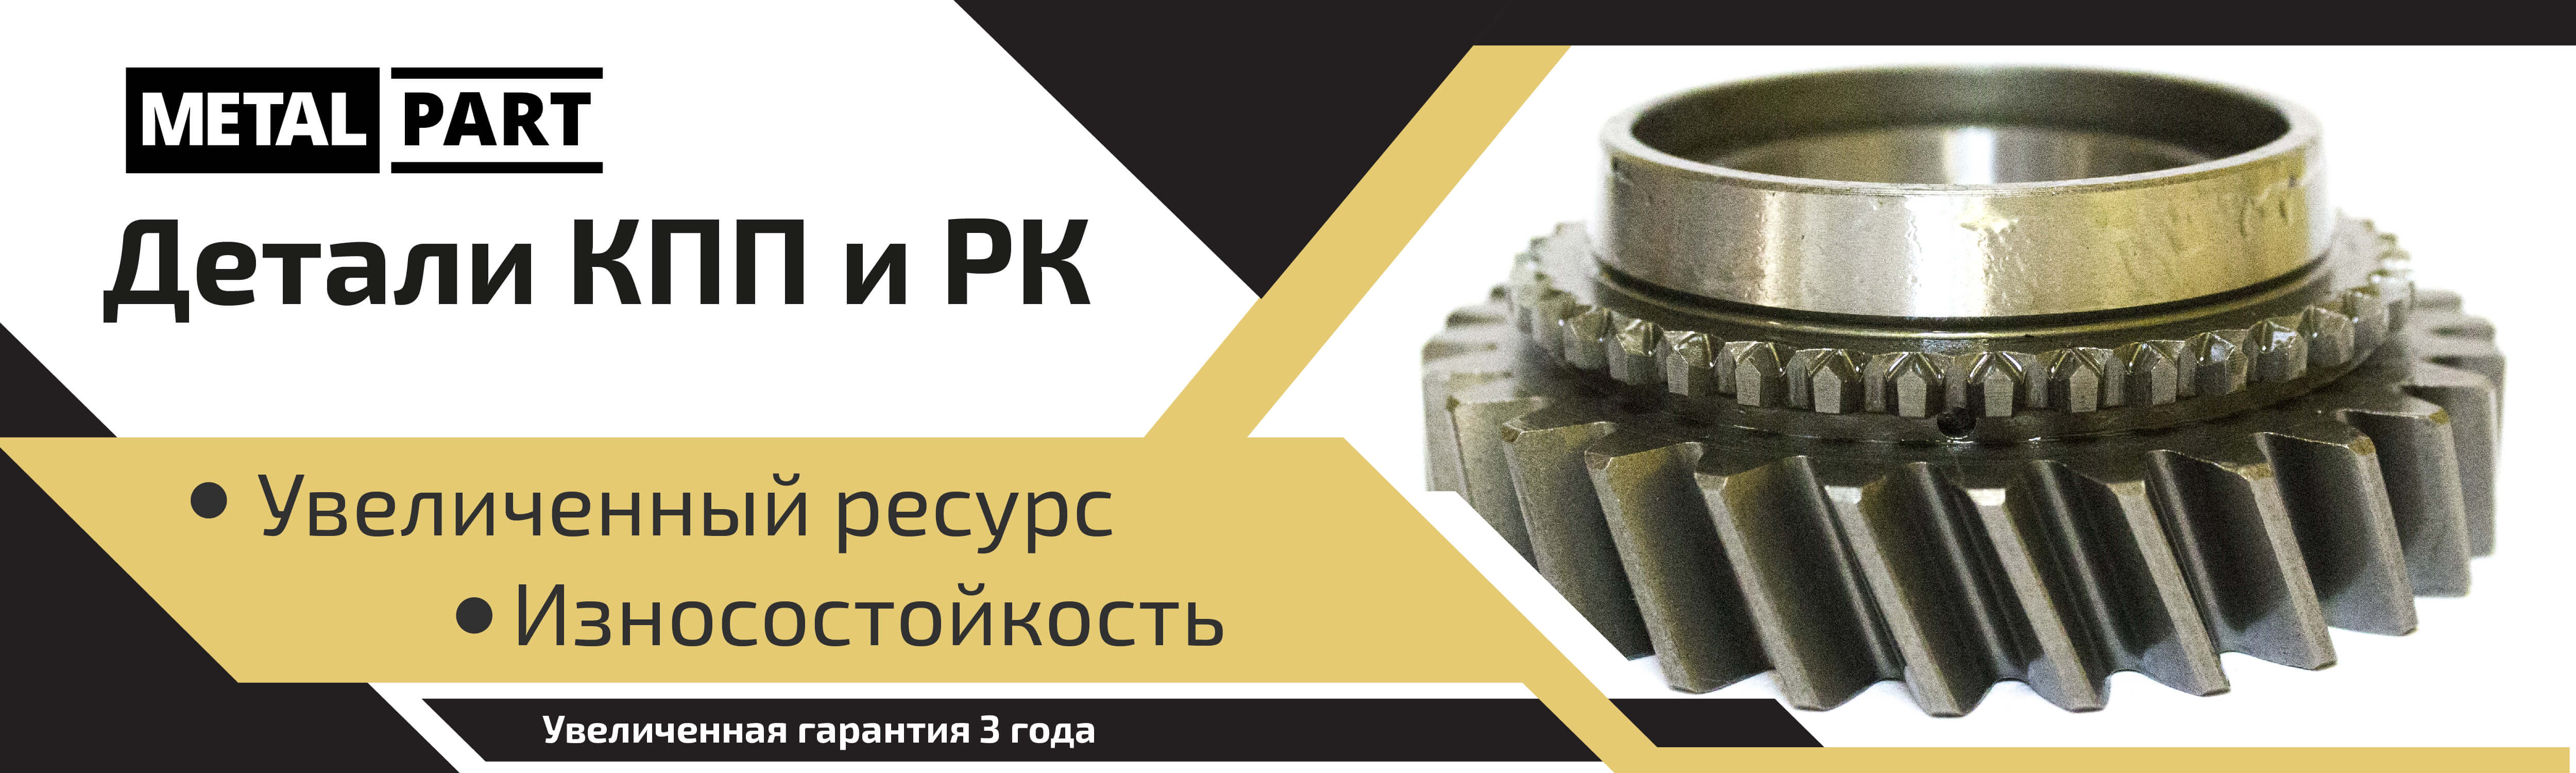 Детали КПП и РК для автомобилей ГАЗ и УАЗ по низкой цене, напрямую от производителя. Интернет-магазин MetalPart